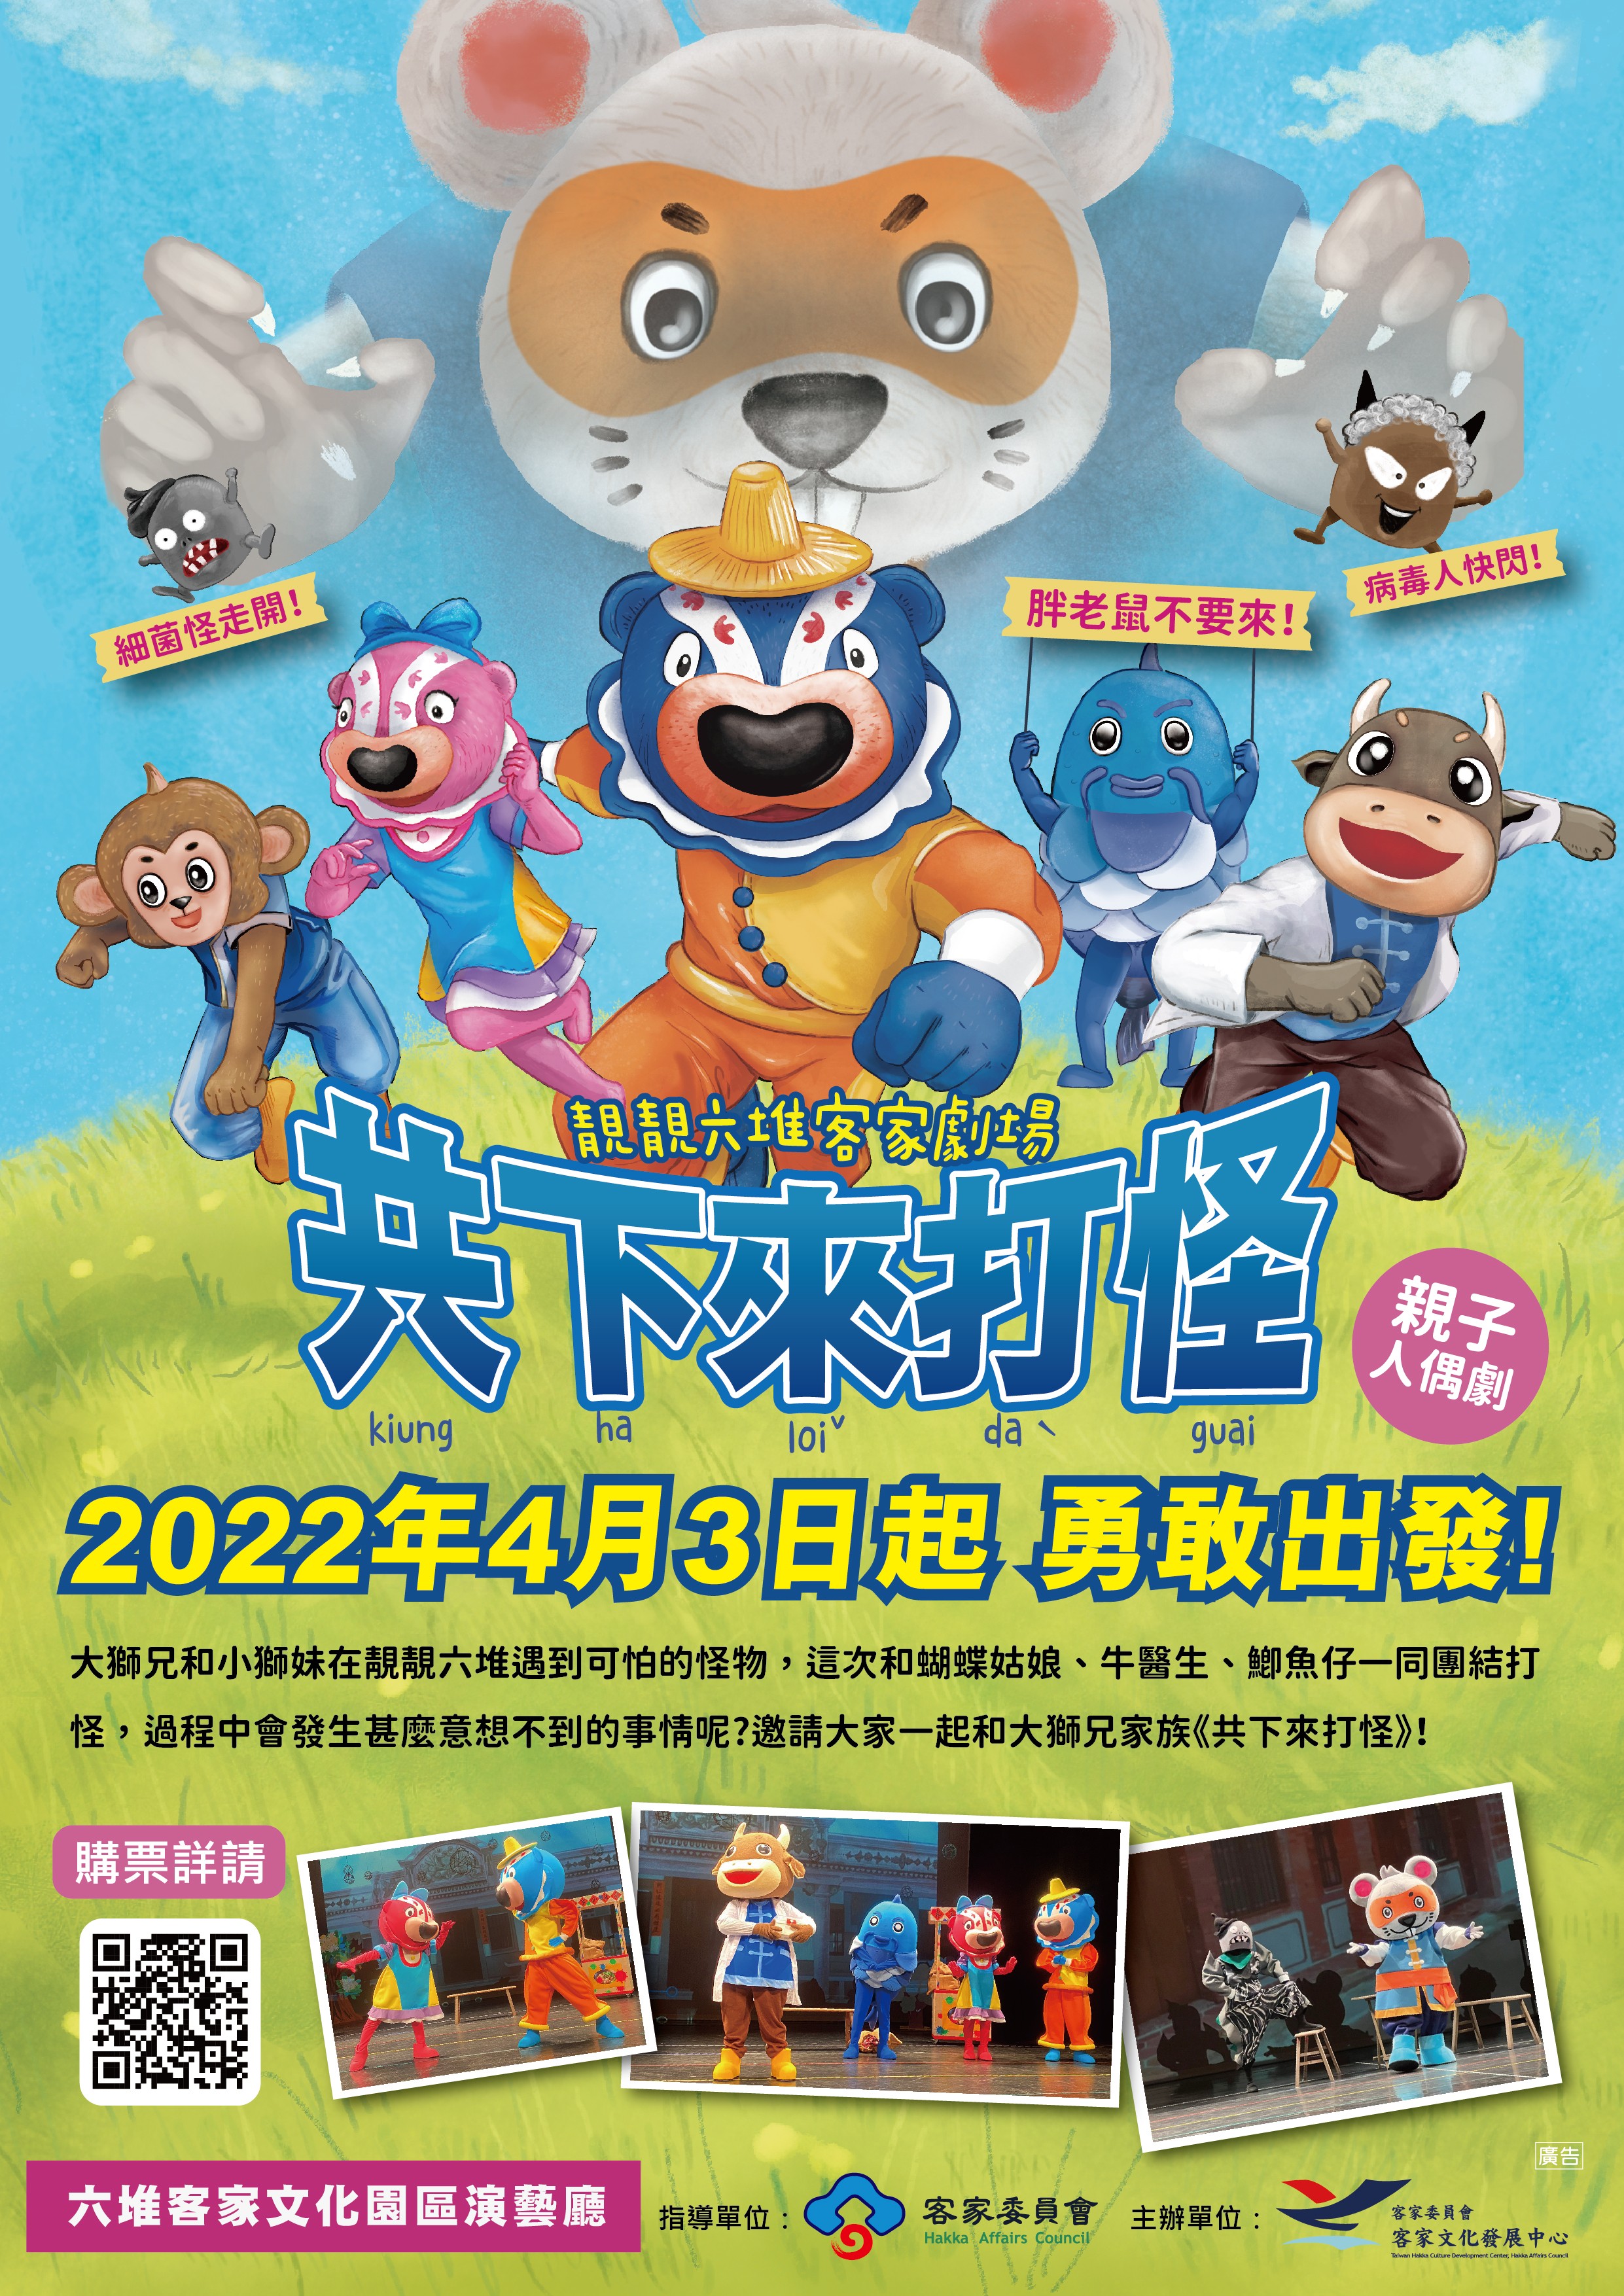 「大獅兄家族人偶劇團」將於4月3日推出全新人偶劇【共下來打怪】囉！ 展示圖